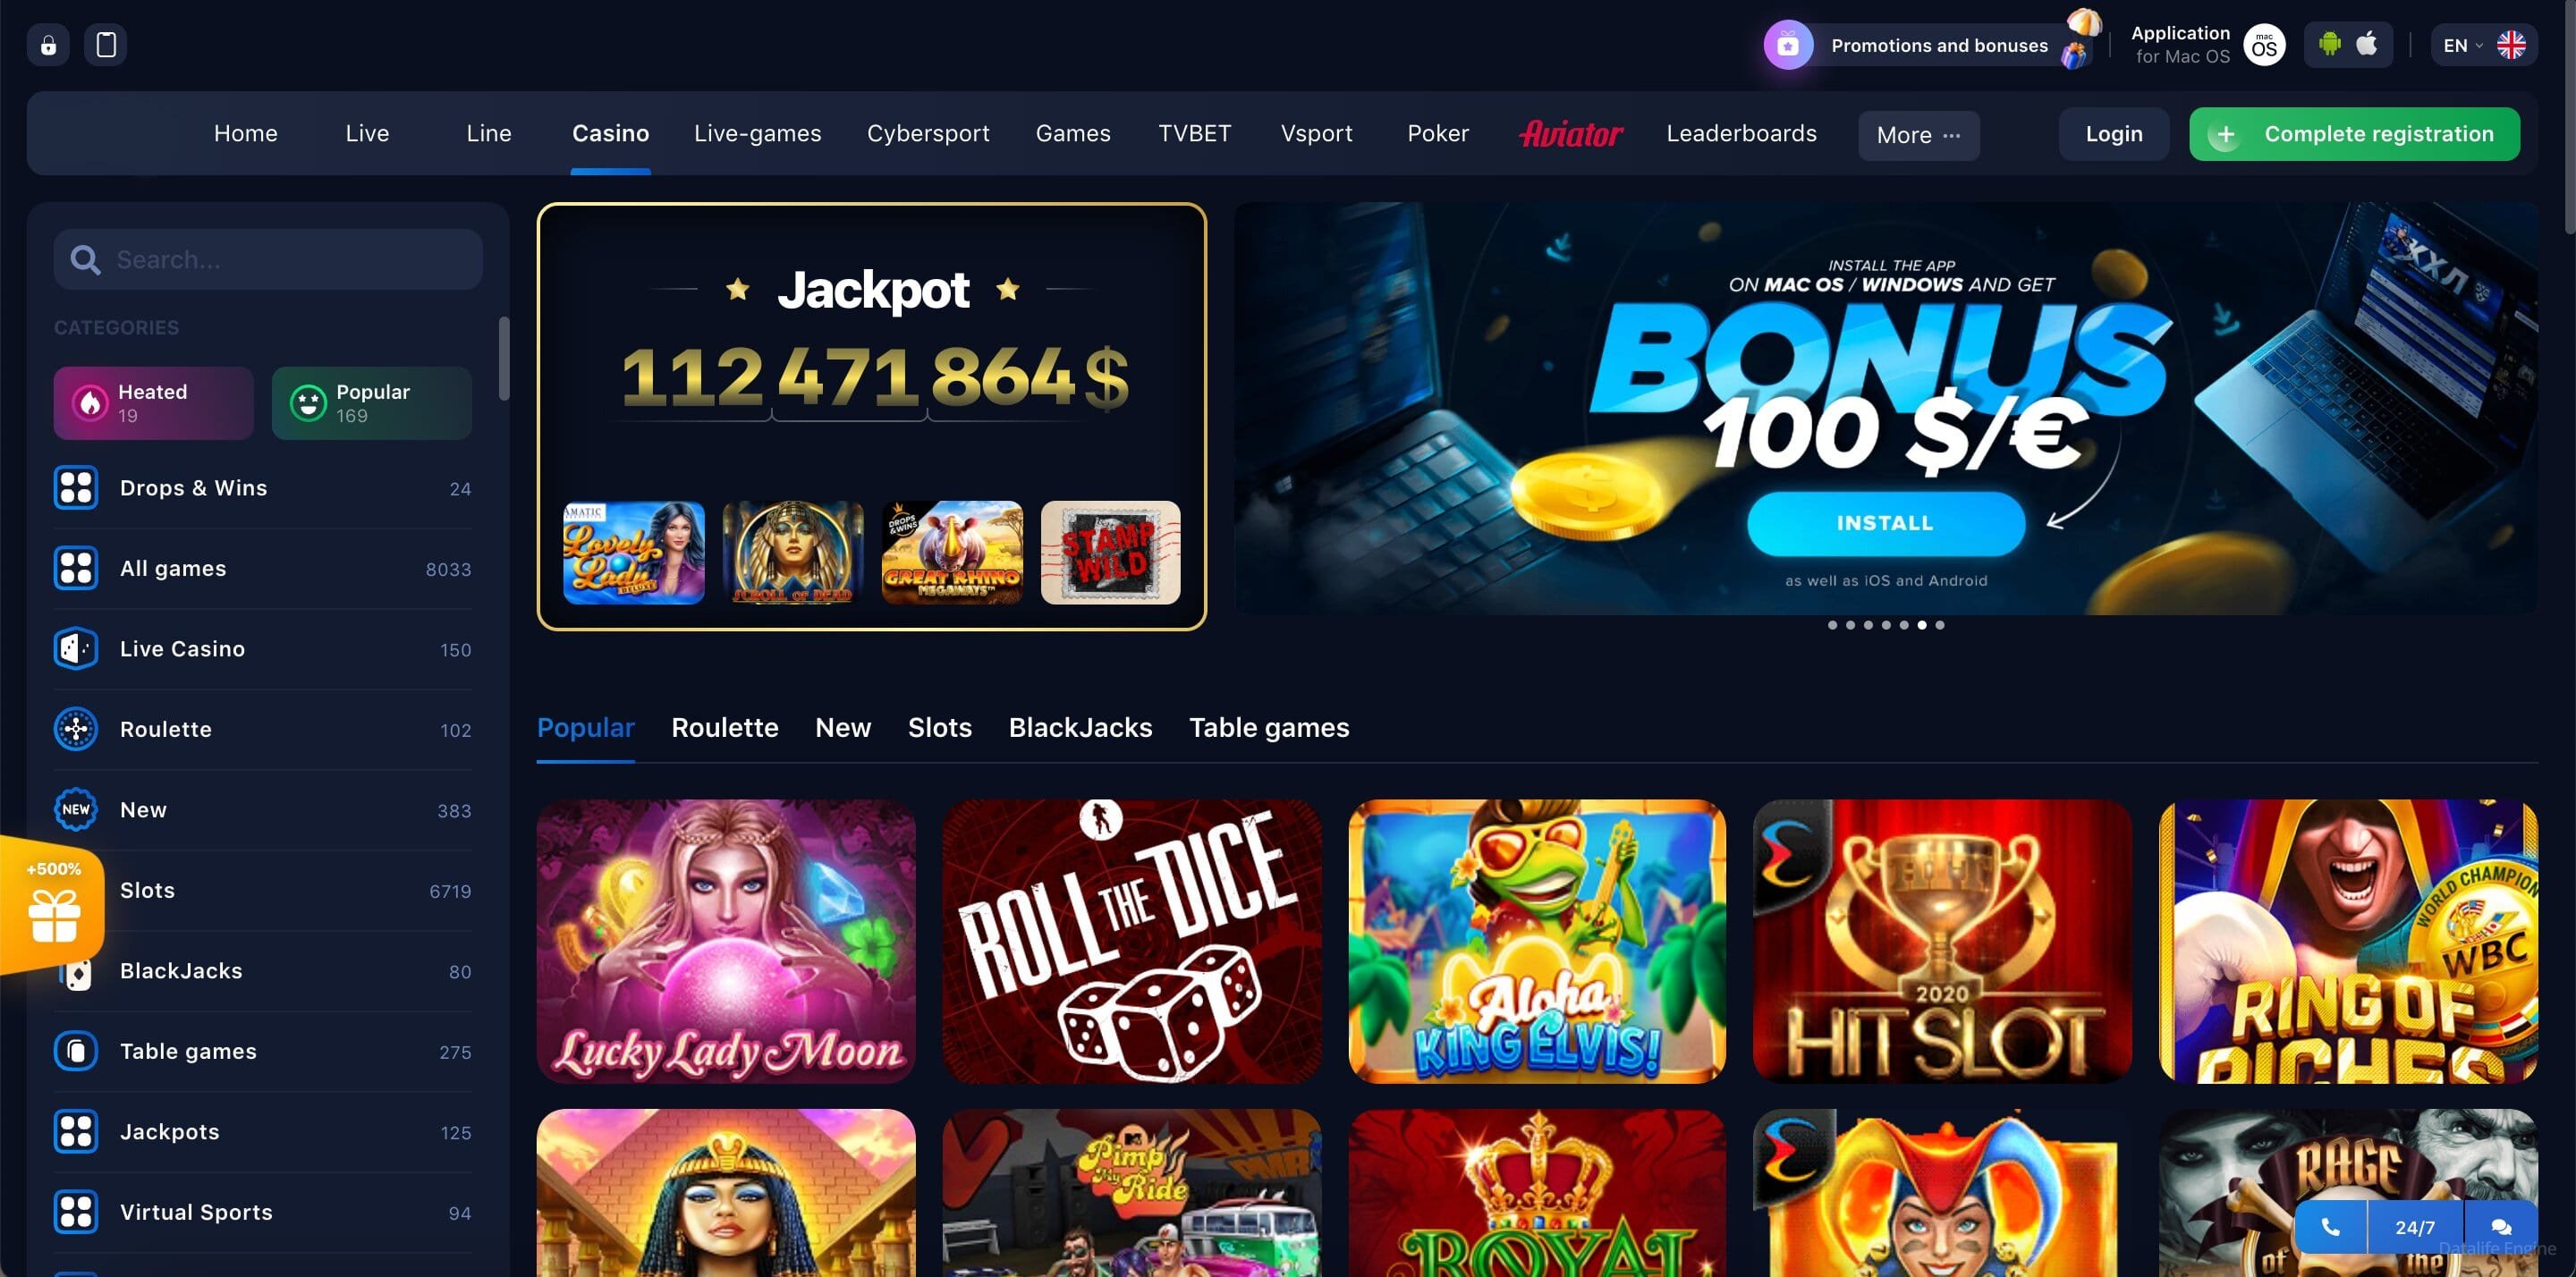 1win casino сайт онлайн играть бесплатно